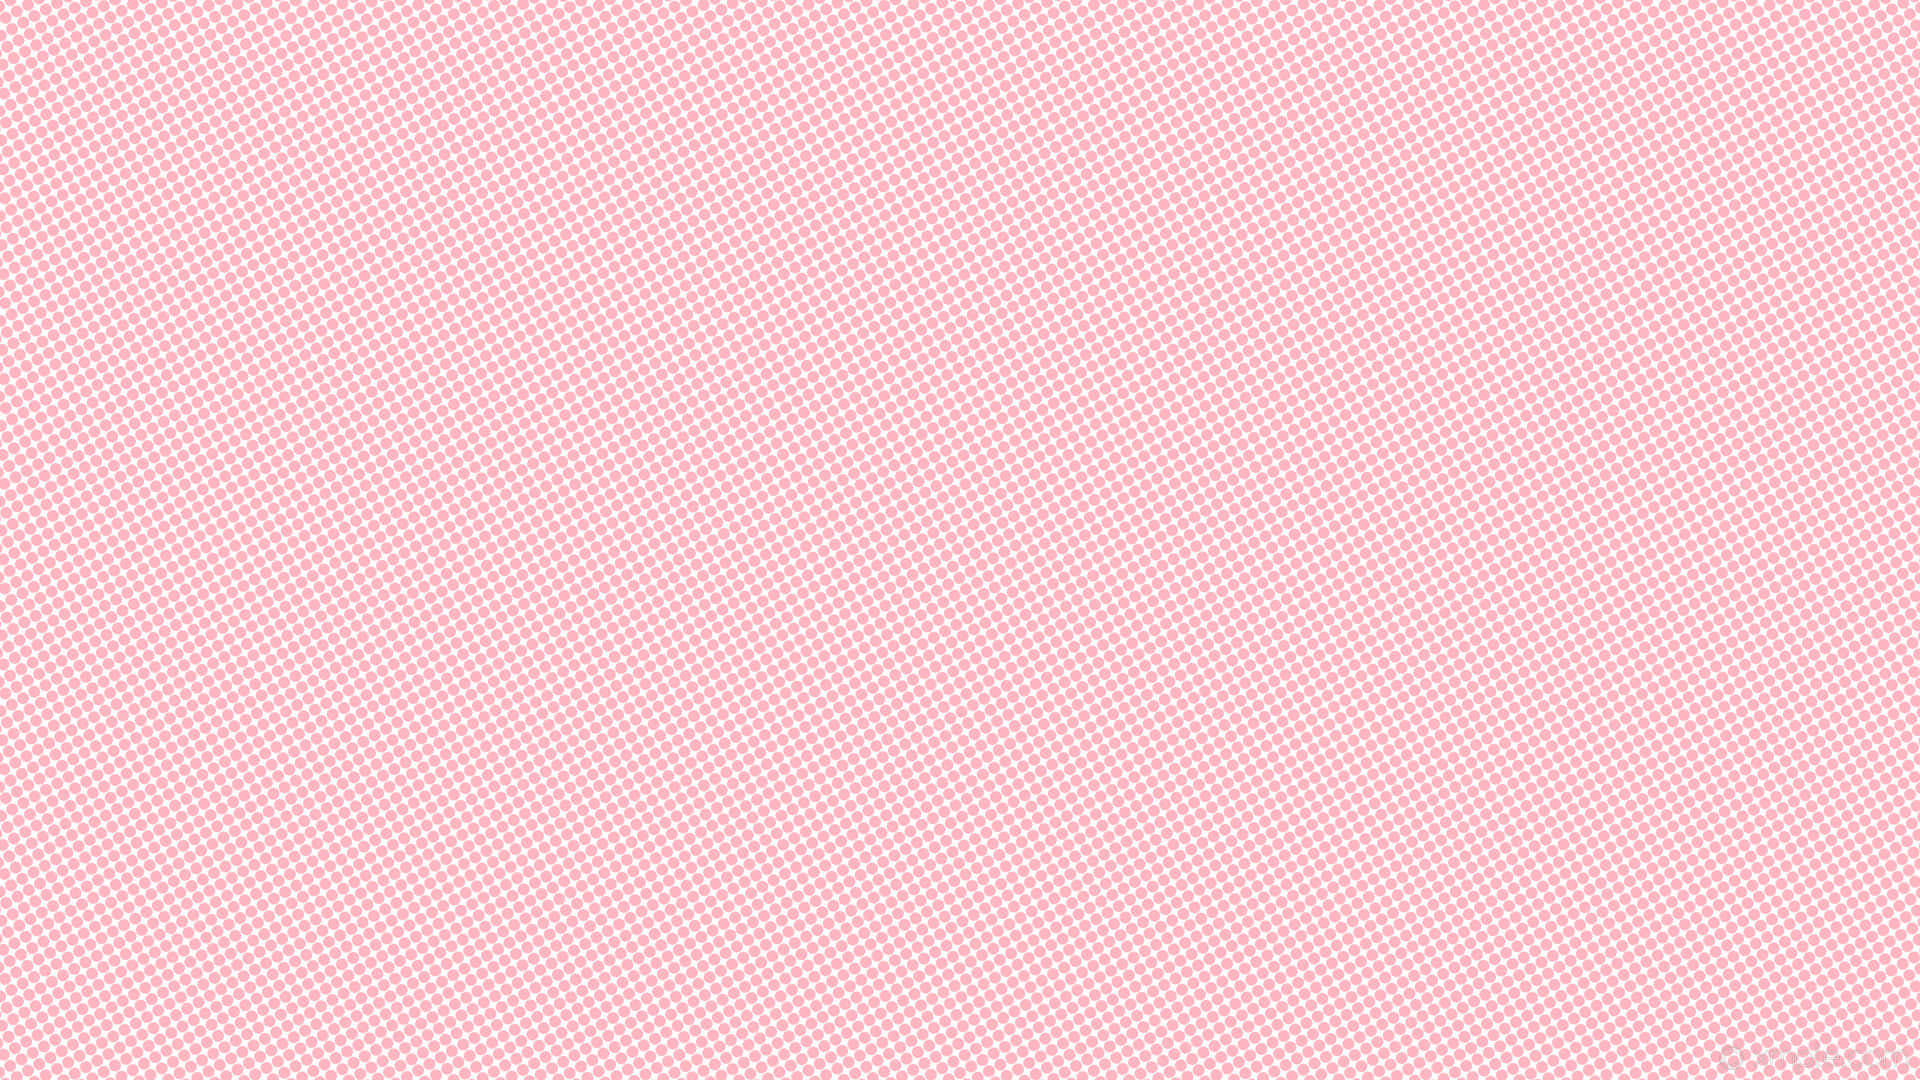 Nyd den bløde og levende farve af denne solide pink baggrund. Wallpaper